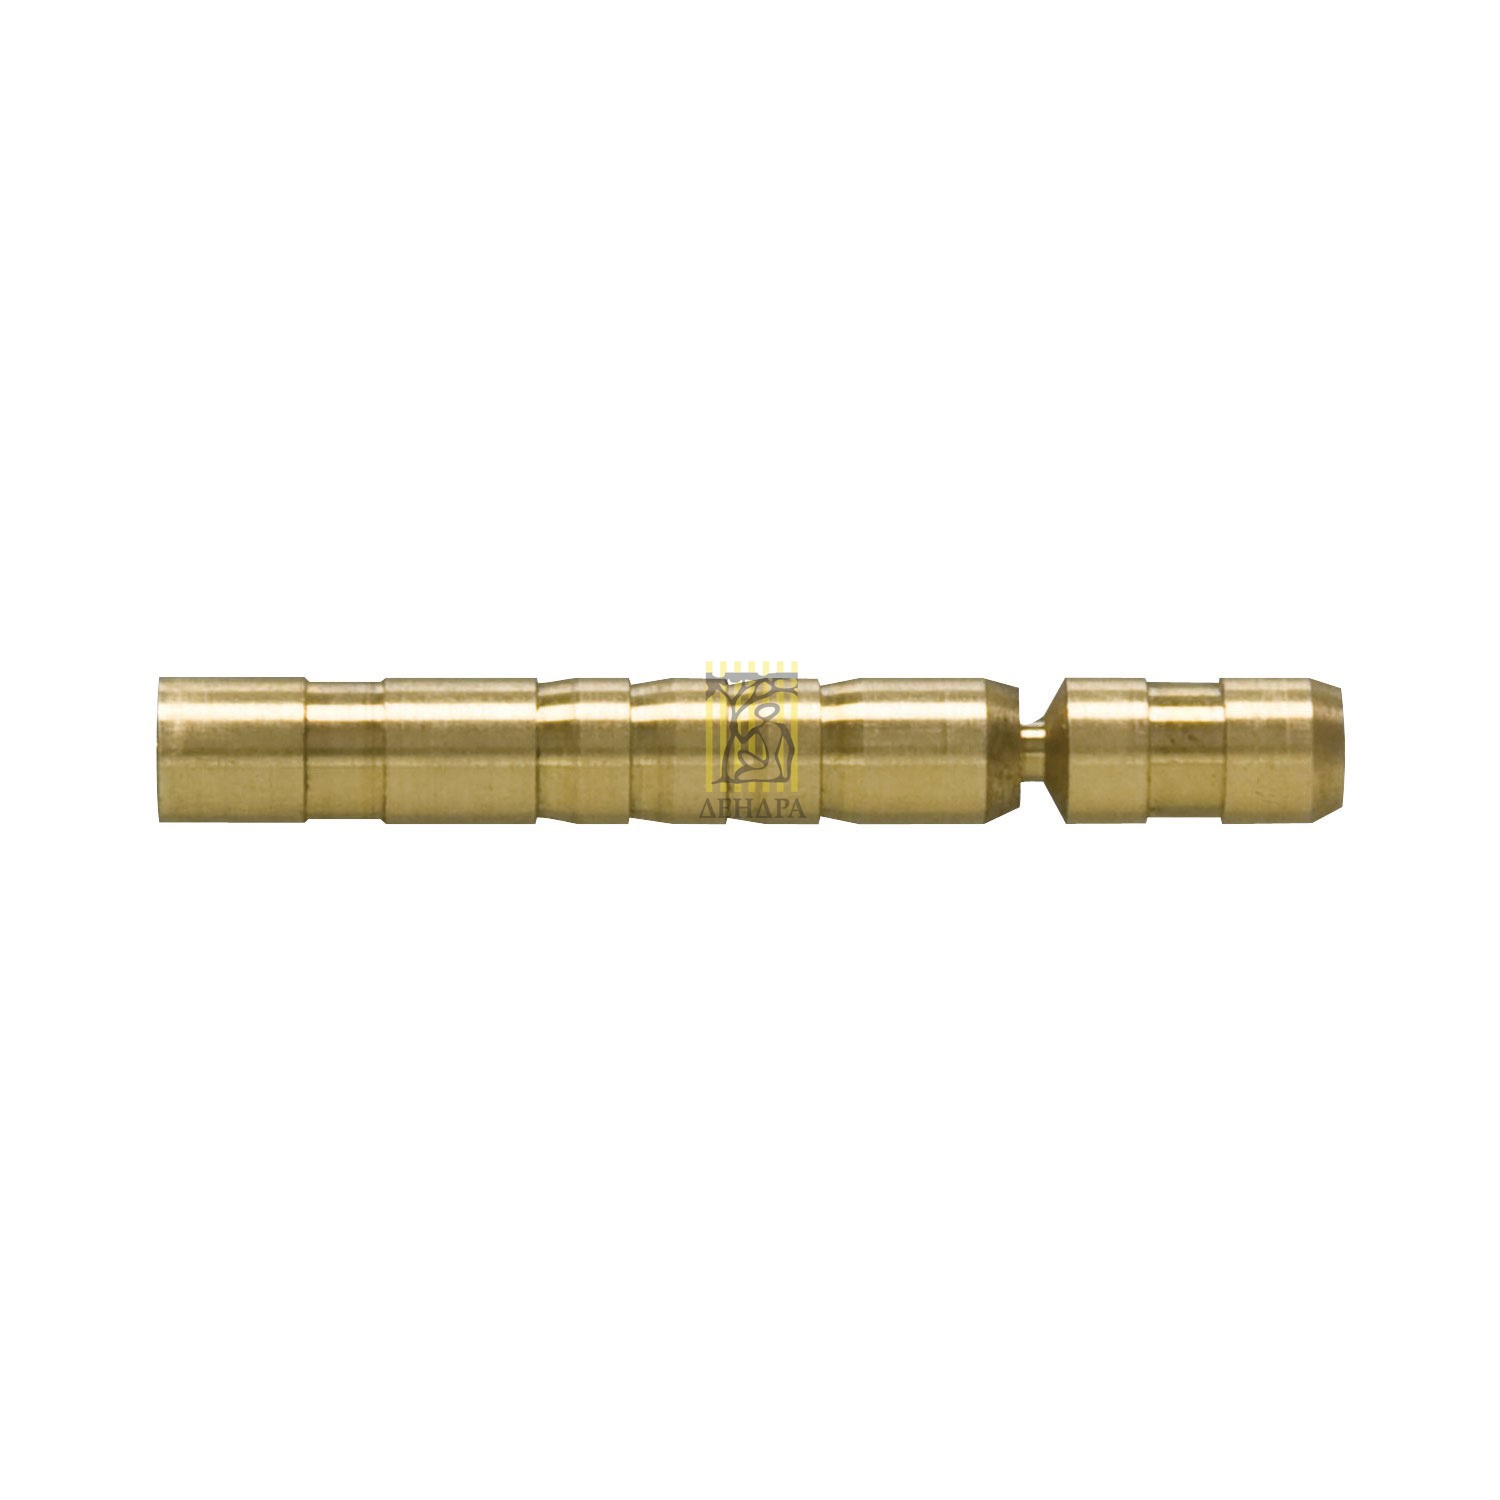 Втулка (инсерт) для вкручивающихся наконечников Brass HIT, вес 75-50 гран, 12 шт в упаковке